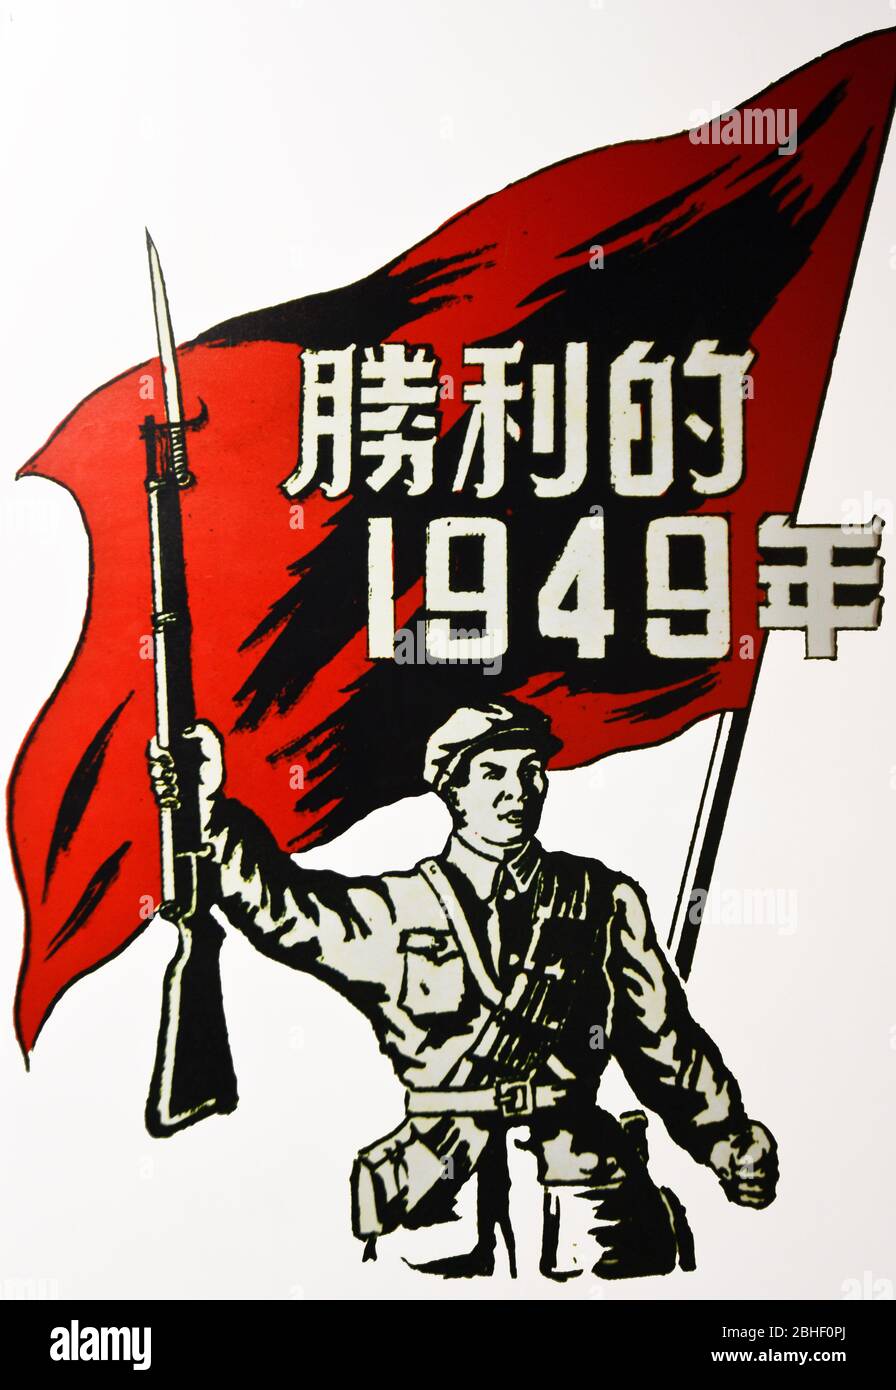 Affiche de la révolution communiste chinoise de 1949. Musée Wuhan, Chine Banque D'Images